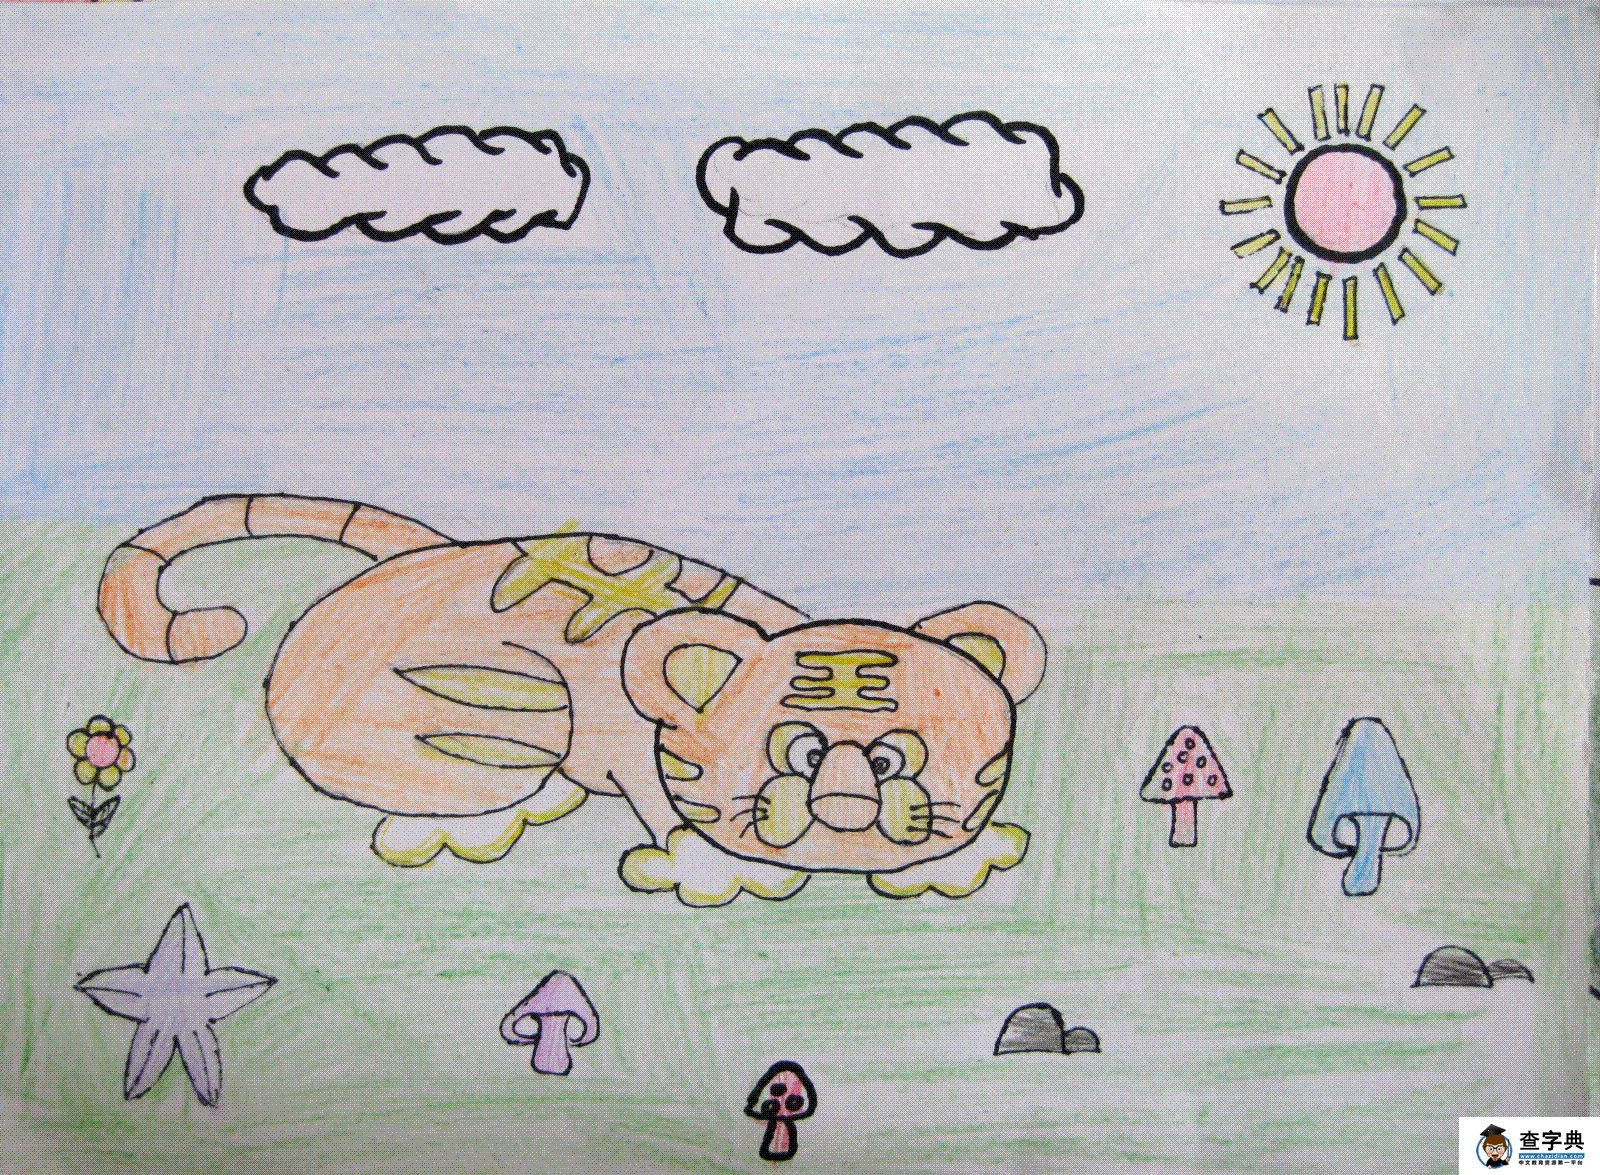 少儿绘画作品铅笔画晒太阳的小老虎